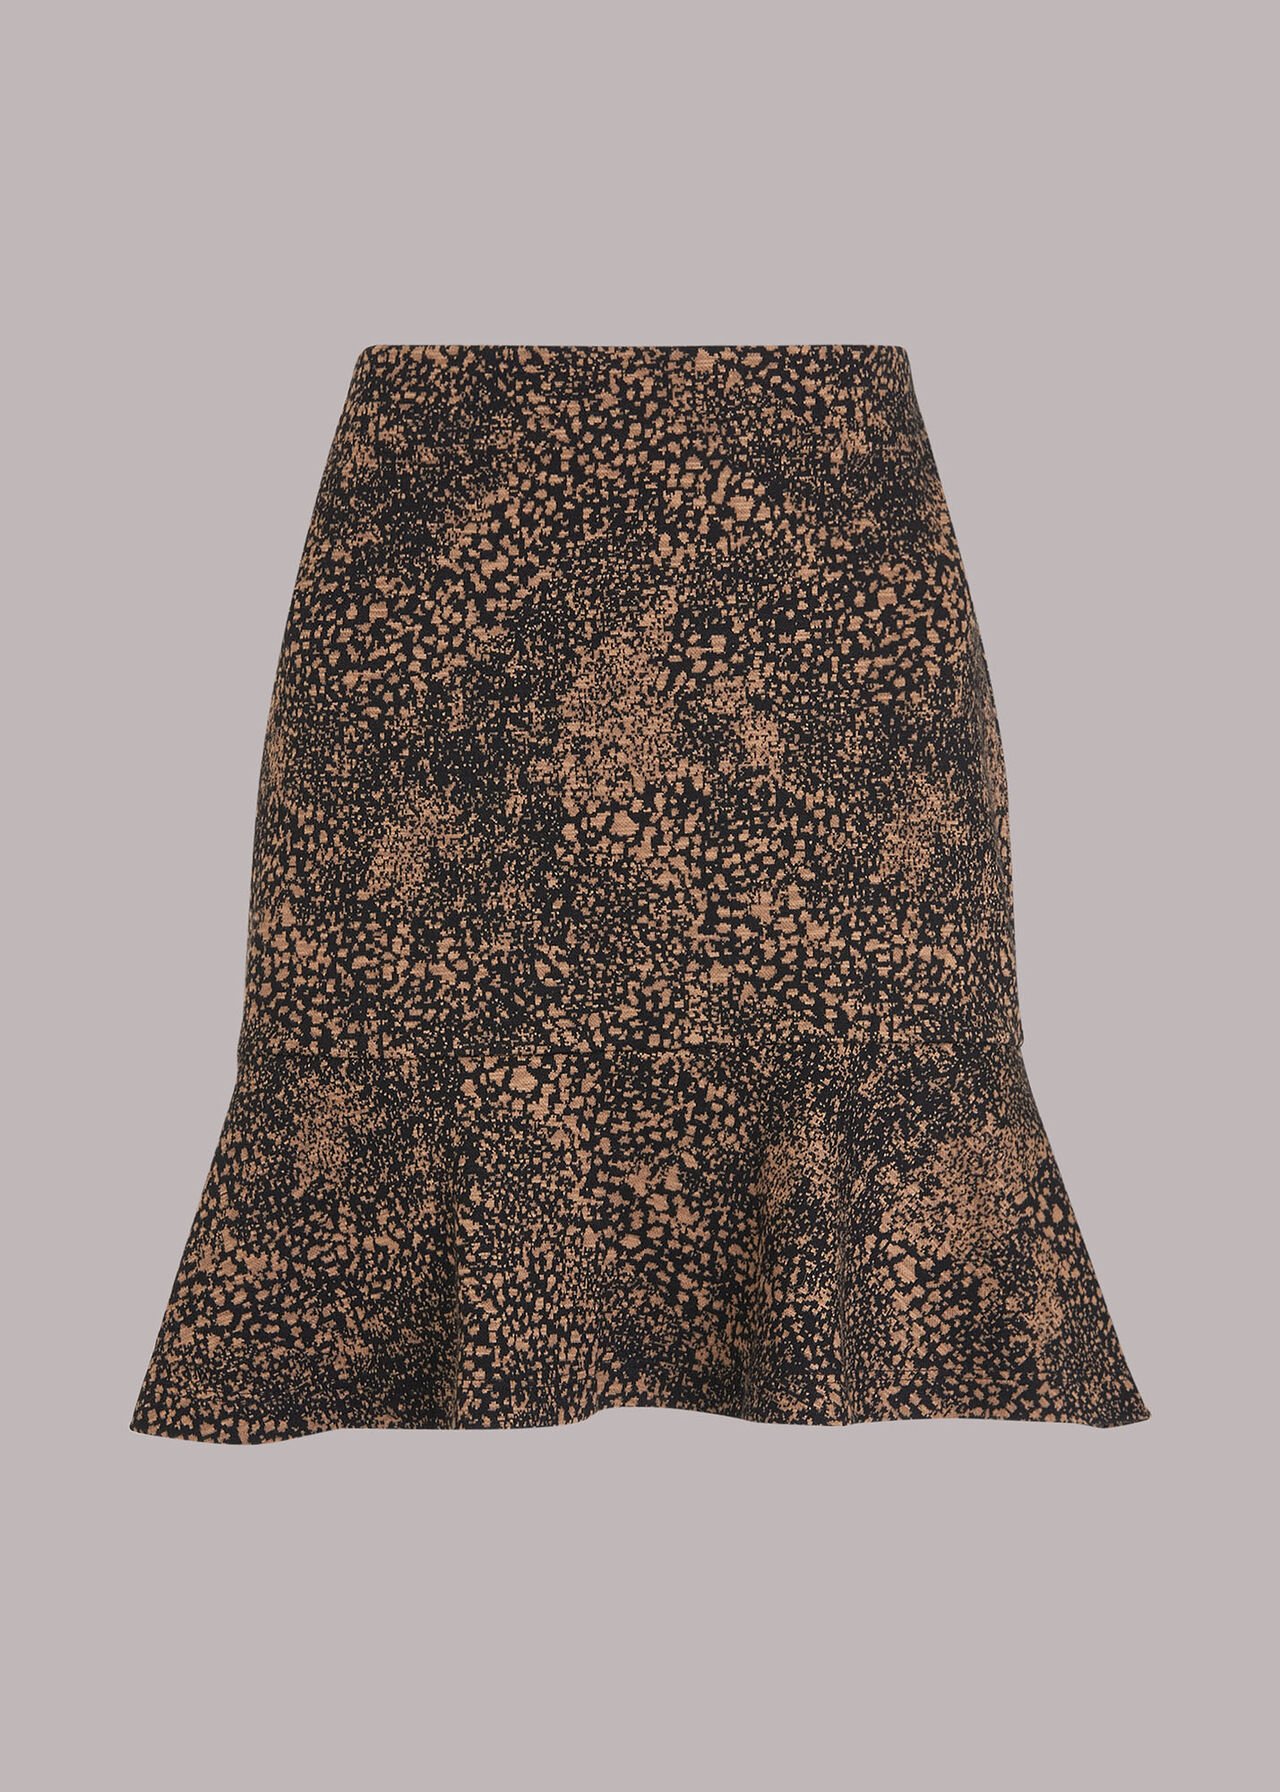 Jacquard Leopard Flippy Skirt